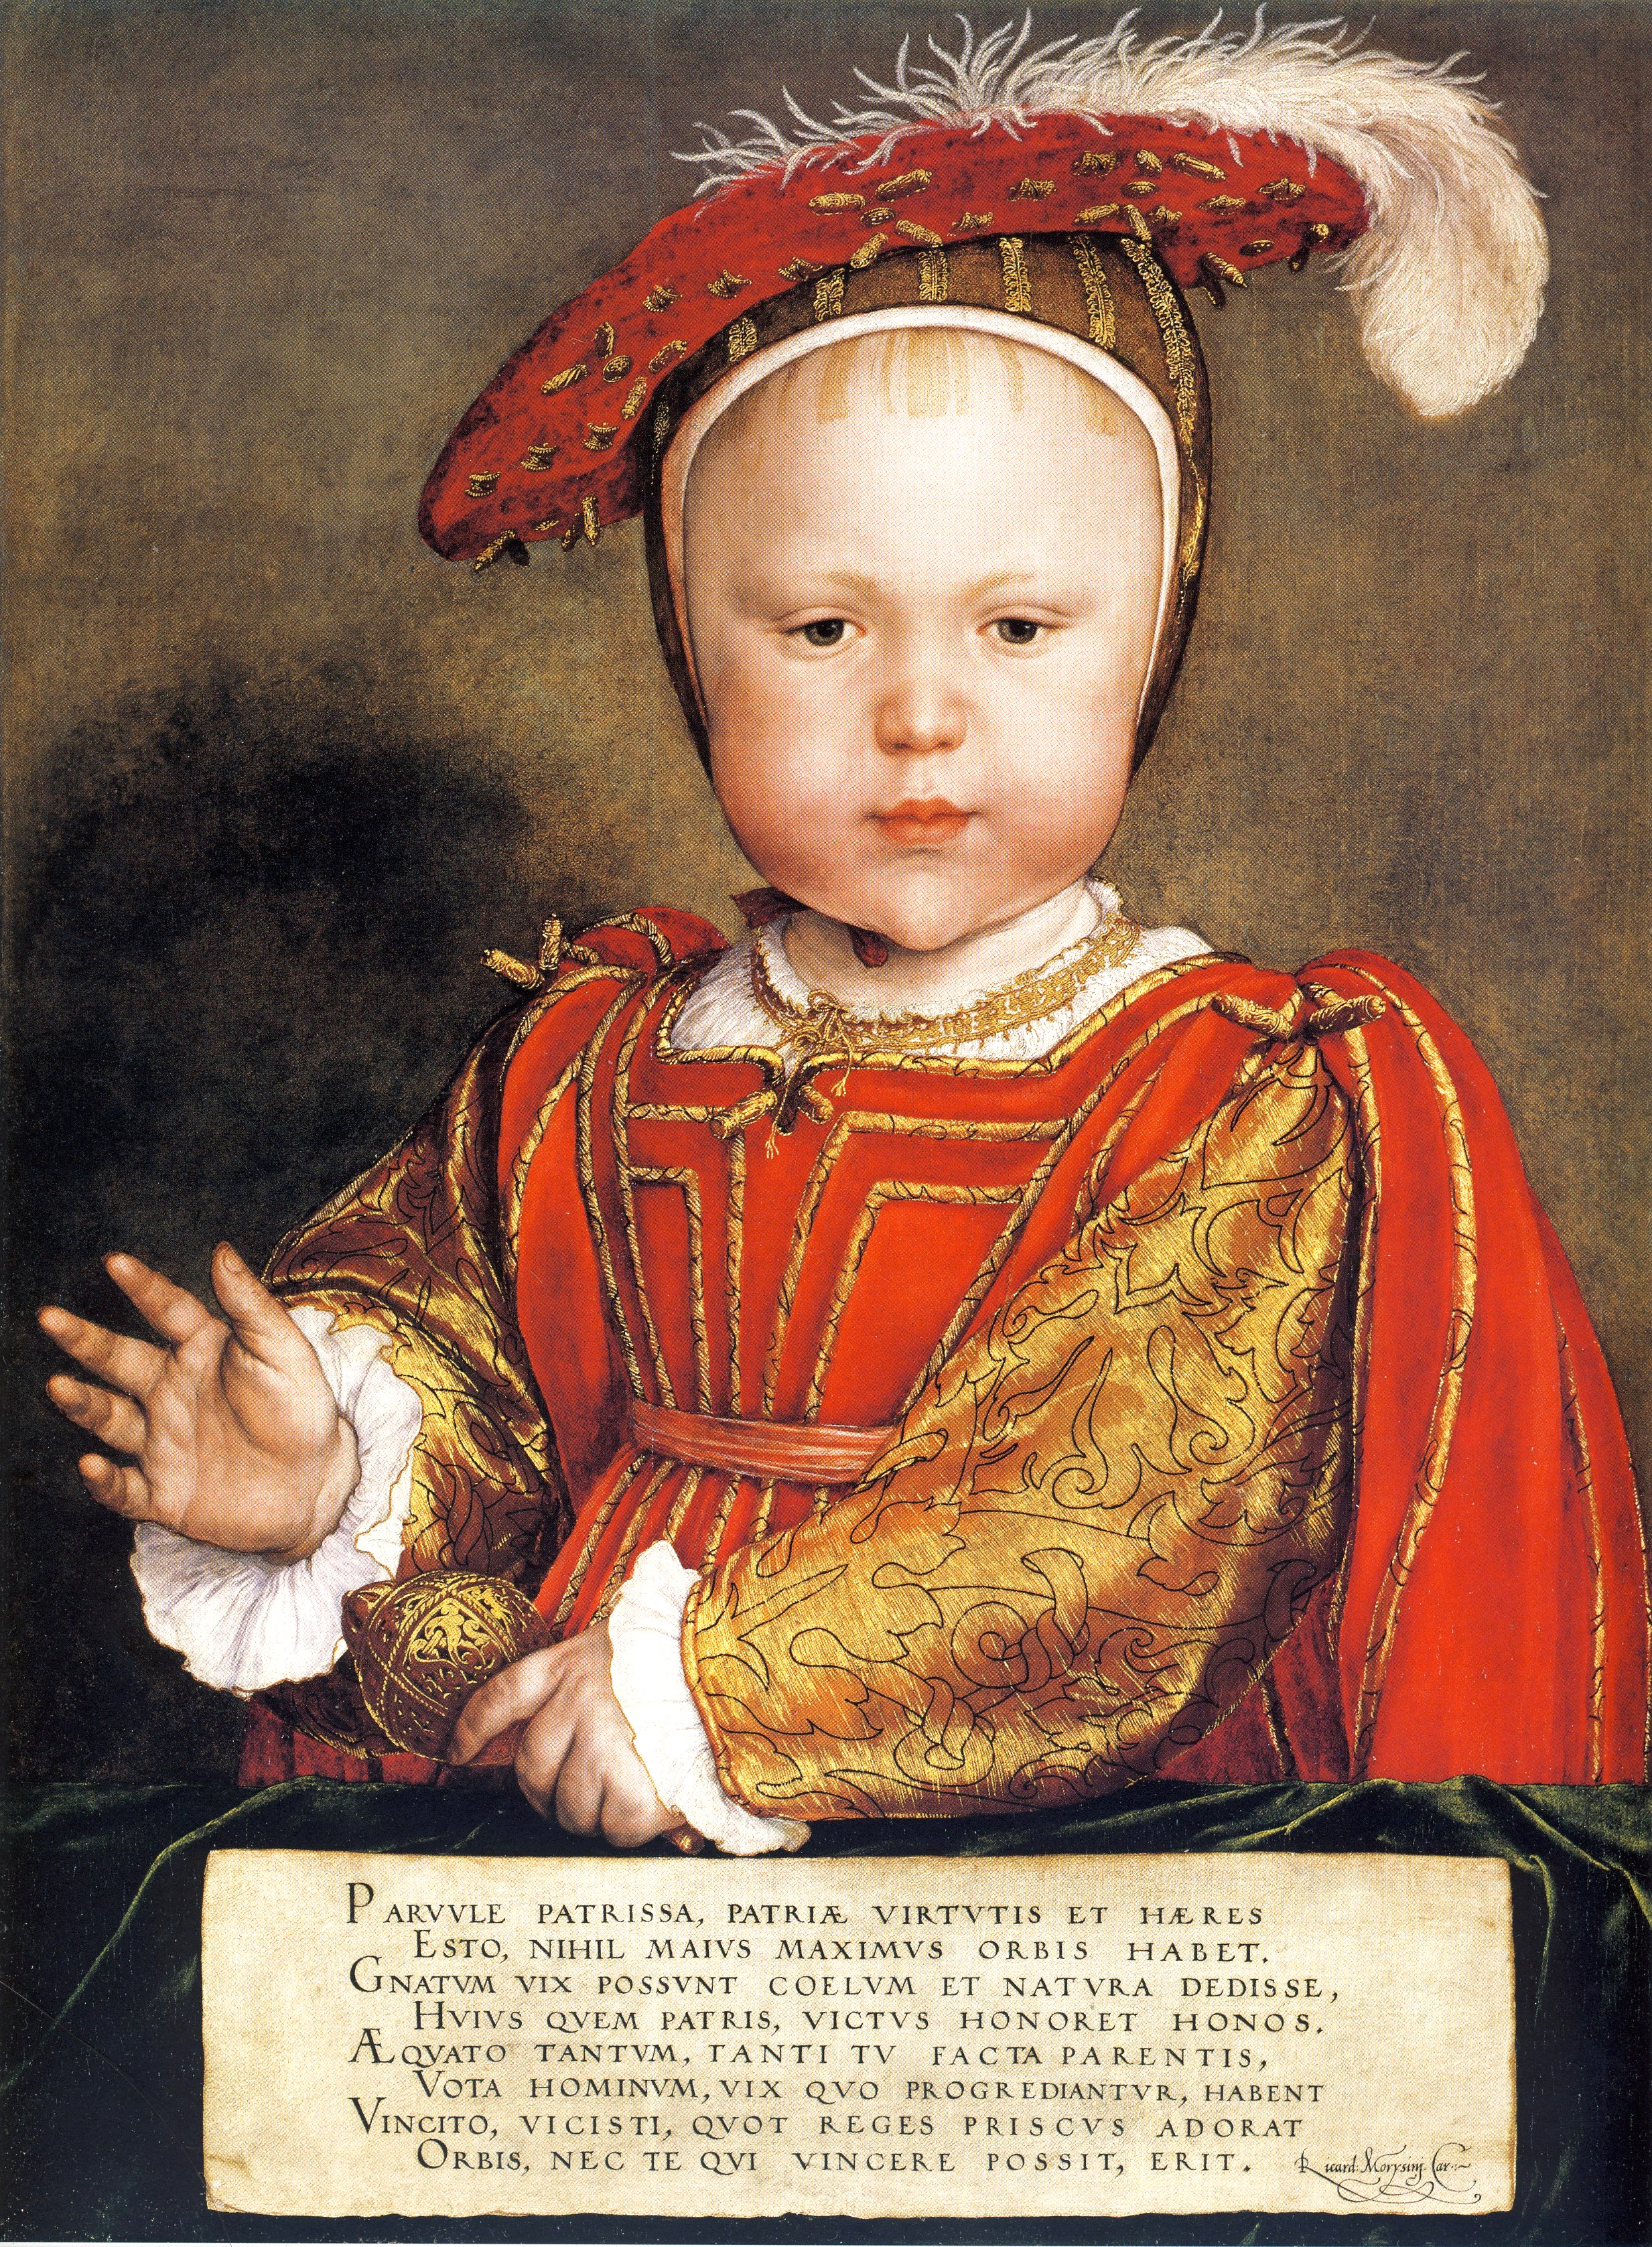 Prince Edward, son of Henry VIII